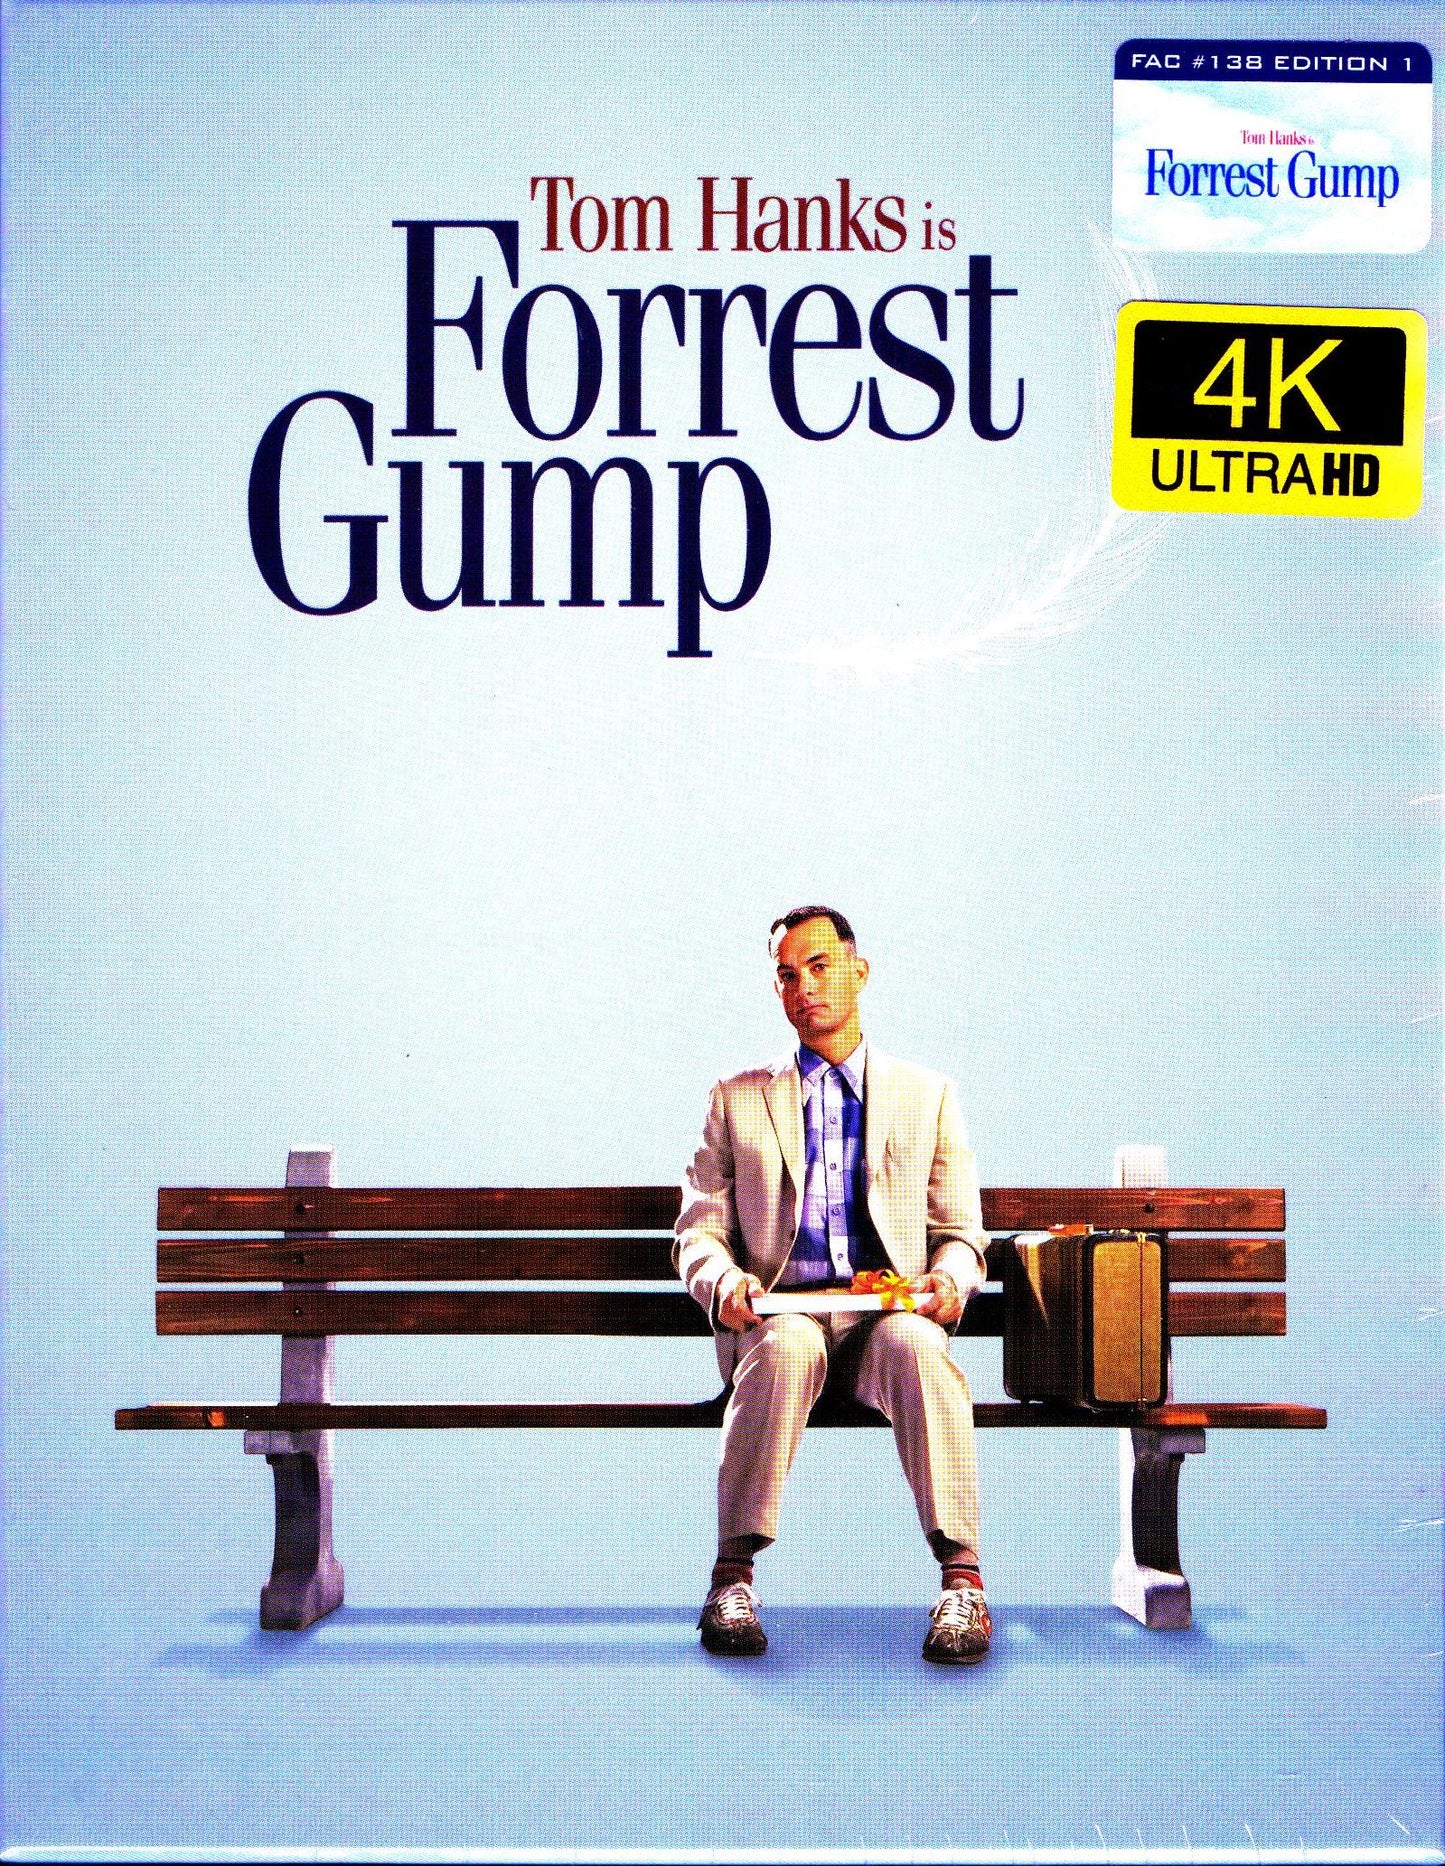 Forrest Gump 4K XL 1-Click SteelBook (FAC#138)(Czech)